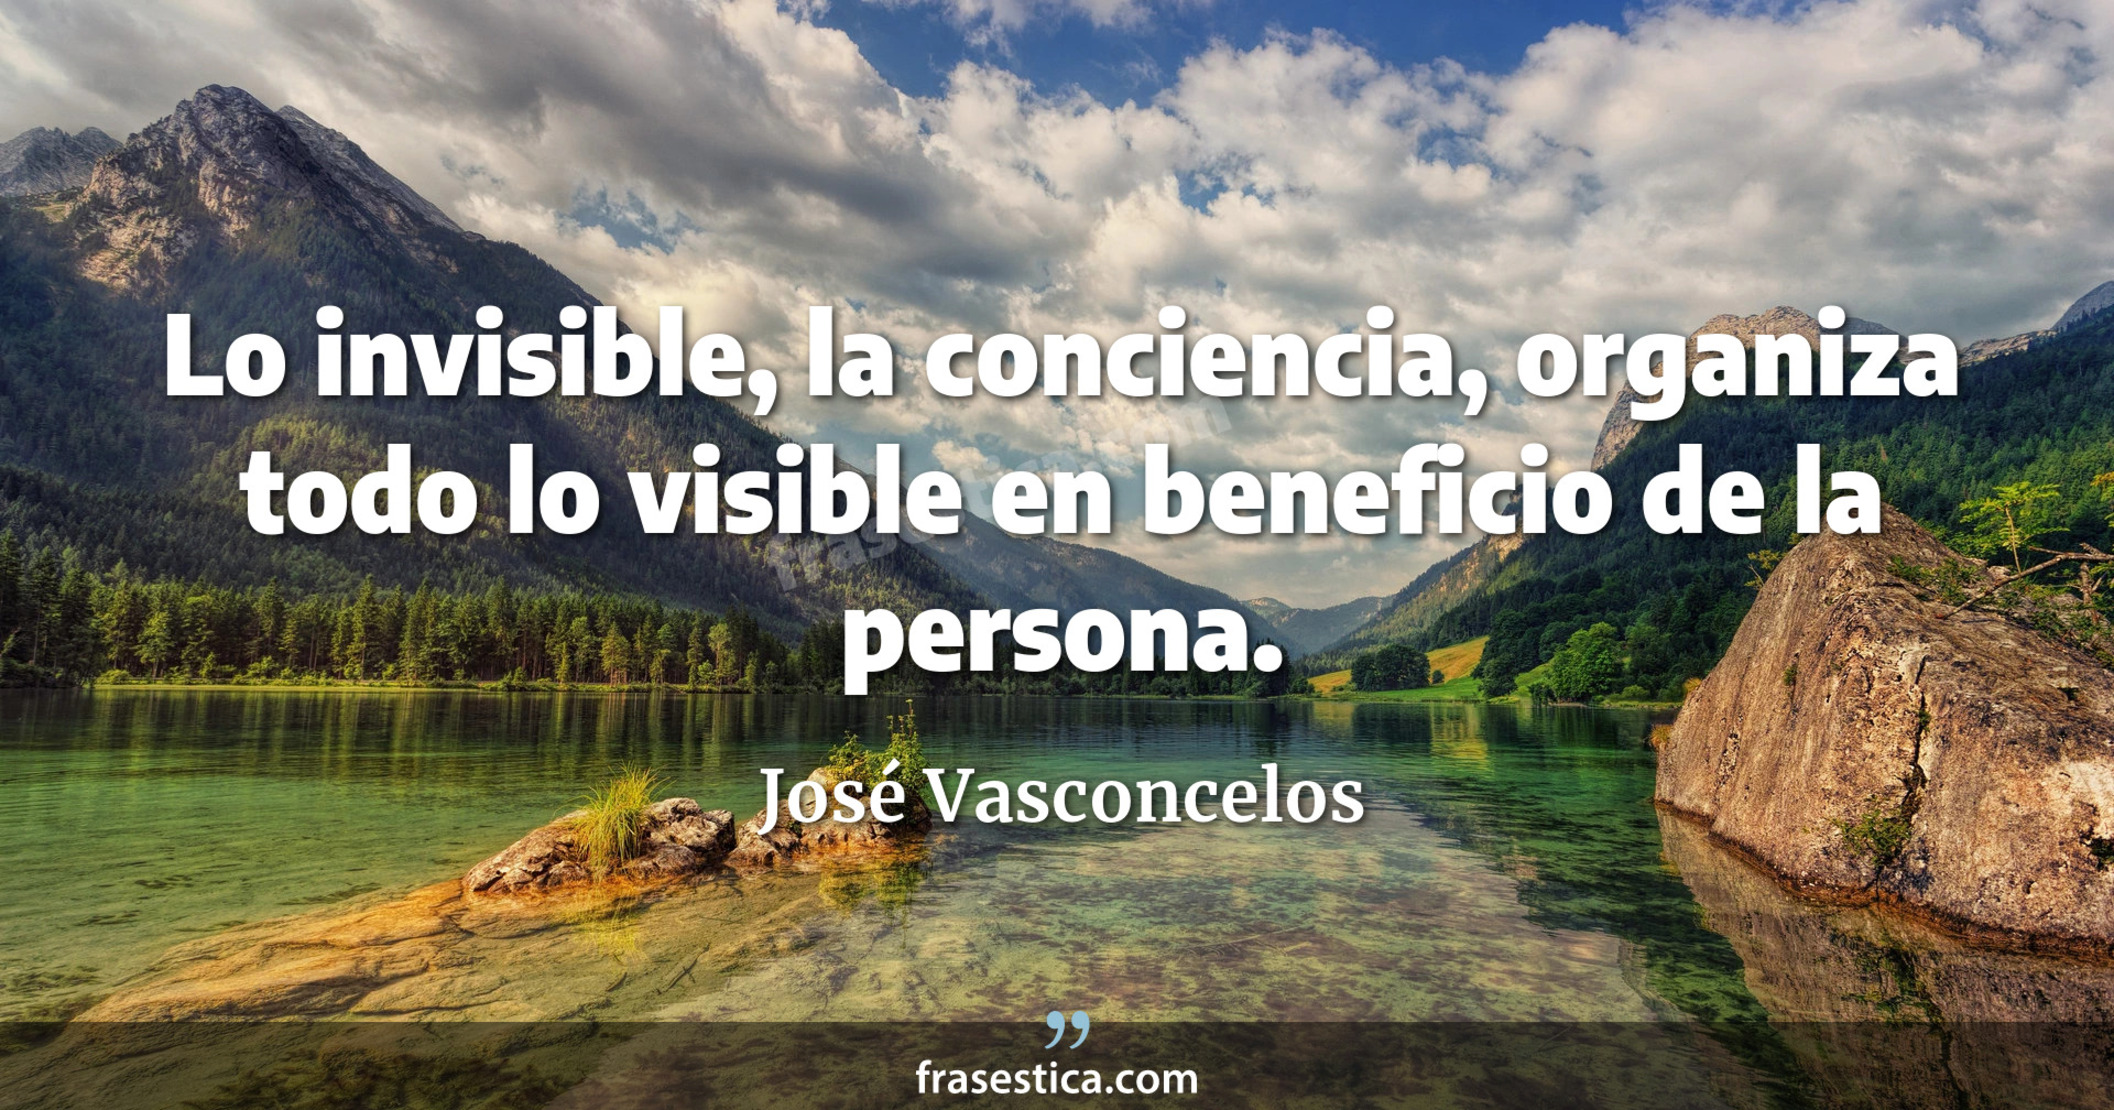 Lo invisible, la conciencia, organiza todo lo visible en beneficio de la persona. - José Vasconcelos